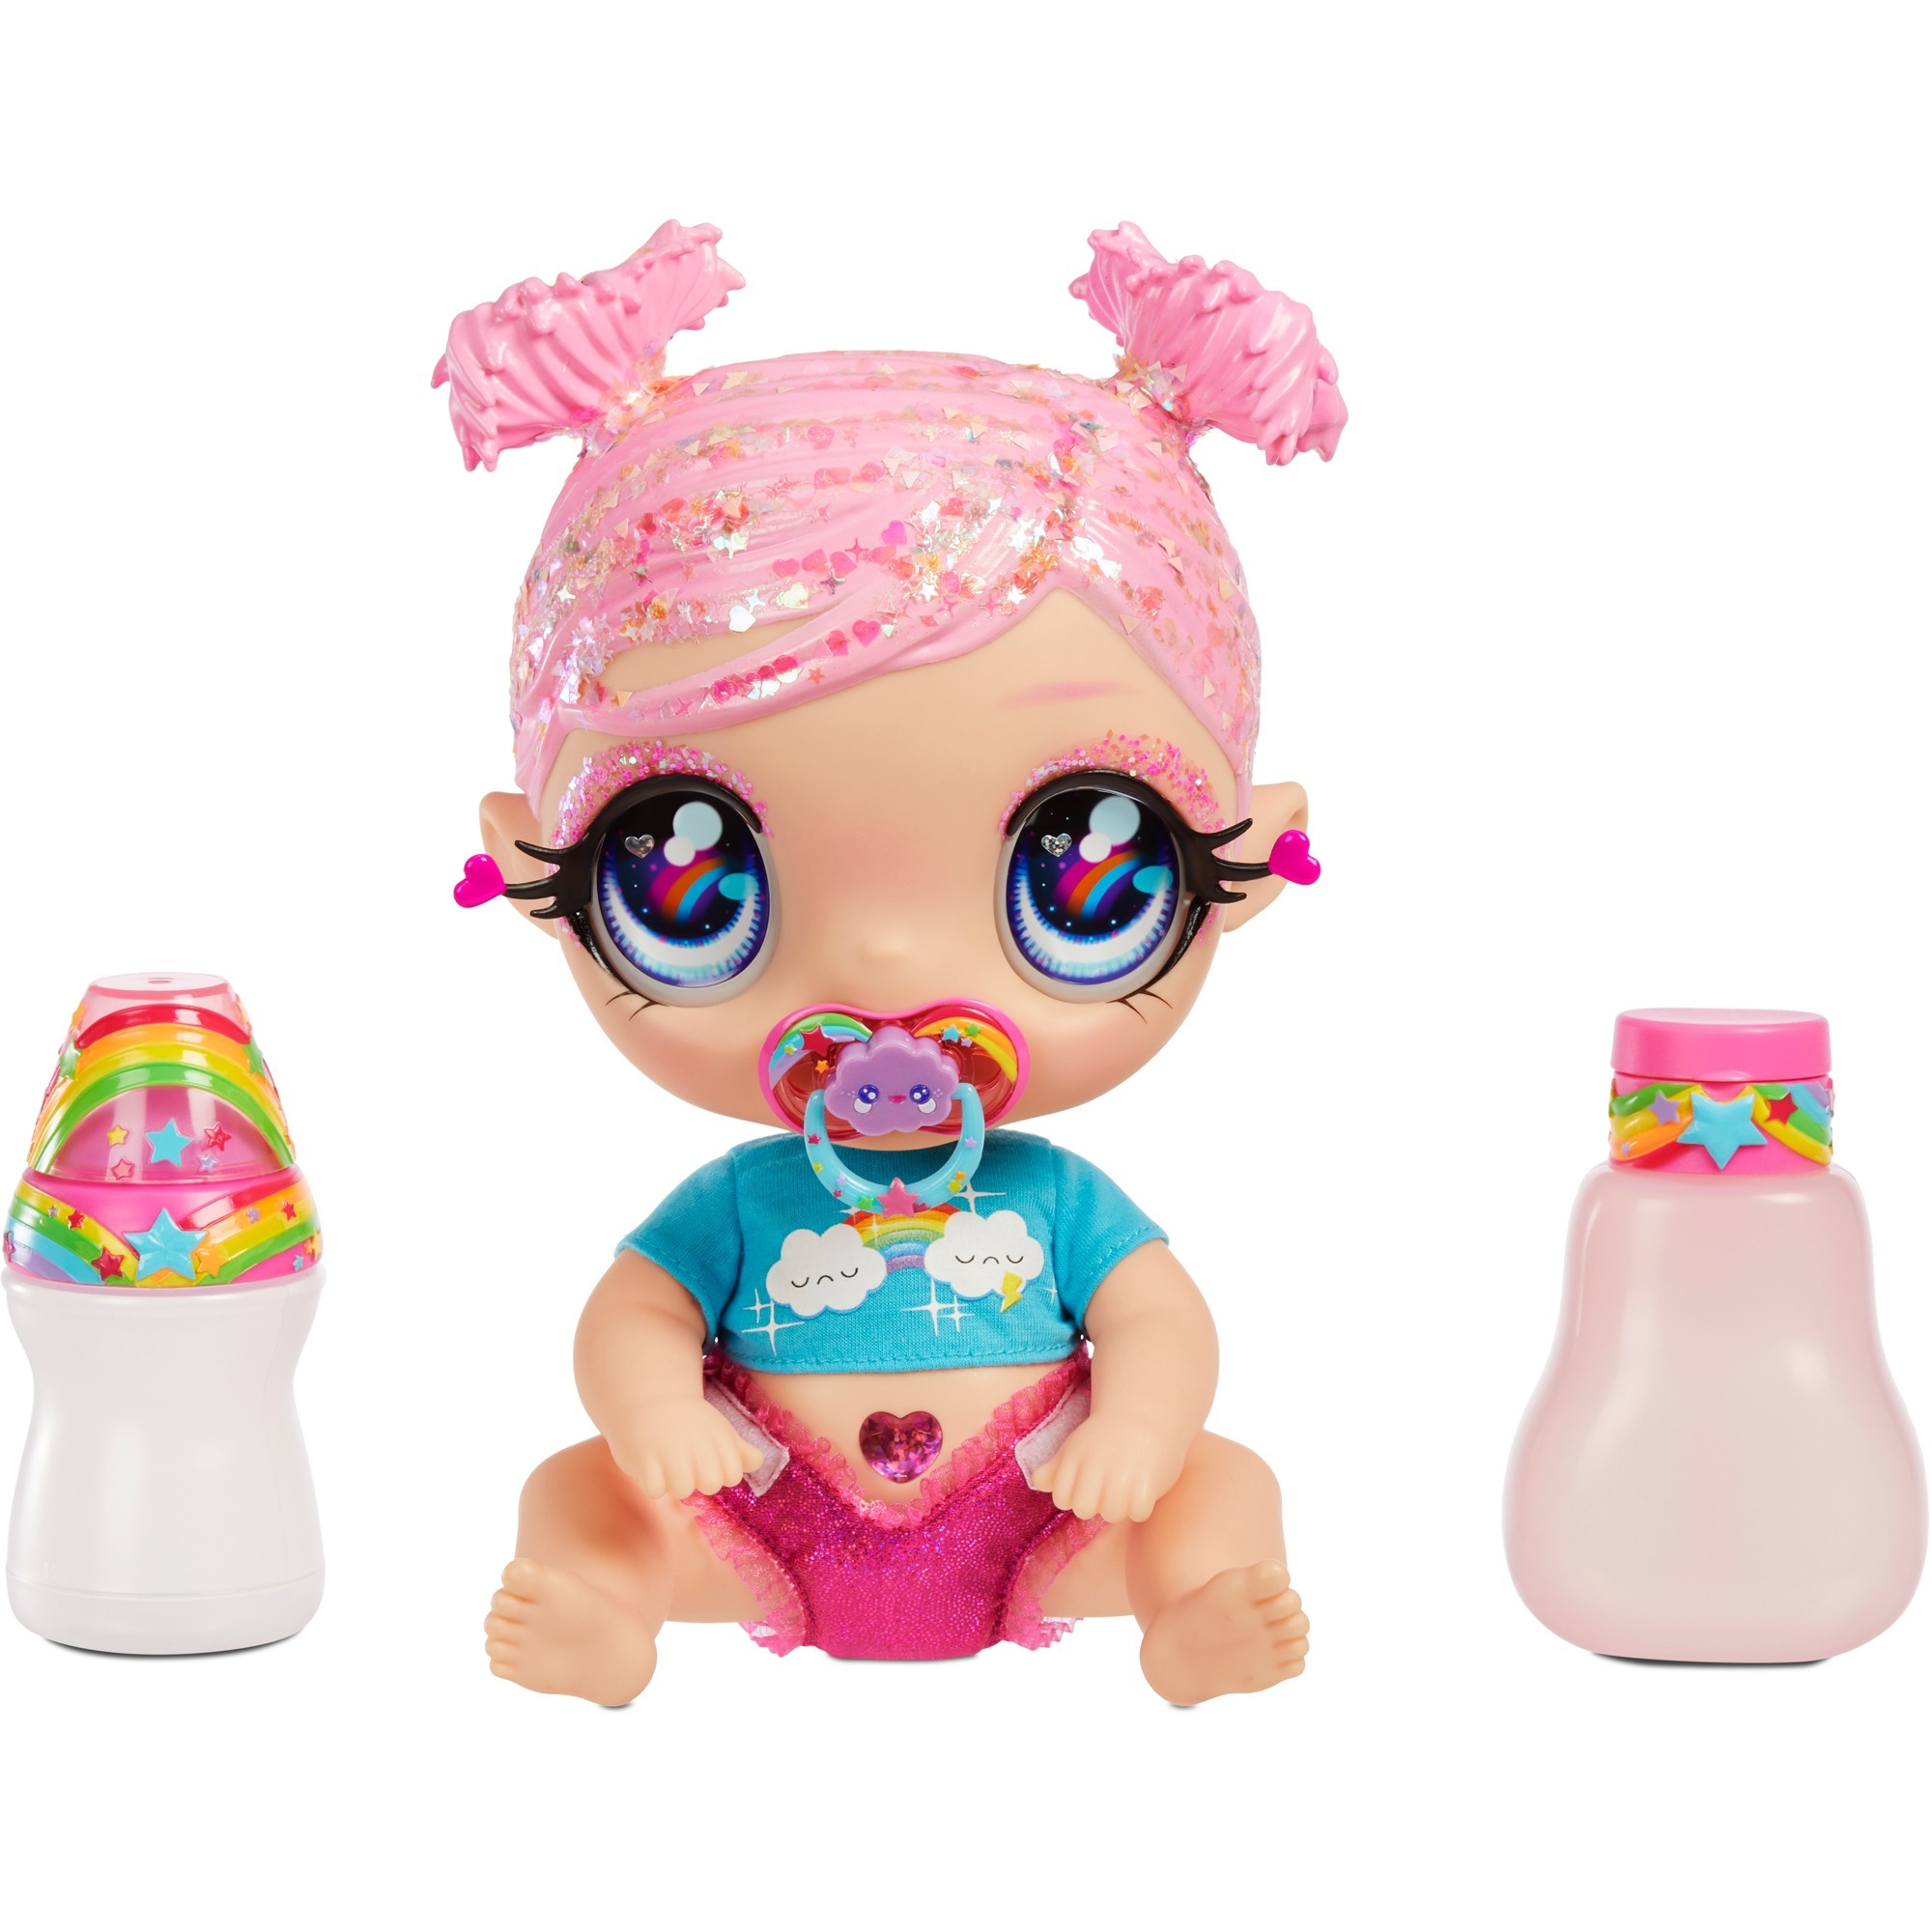 Image of Alternate - Glitter Babyz Doll - Pink (Rainbow), Puppe online einkaufen bei Alternate